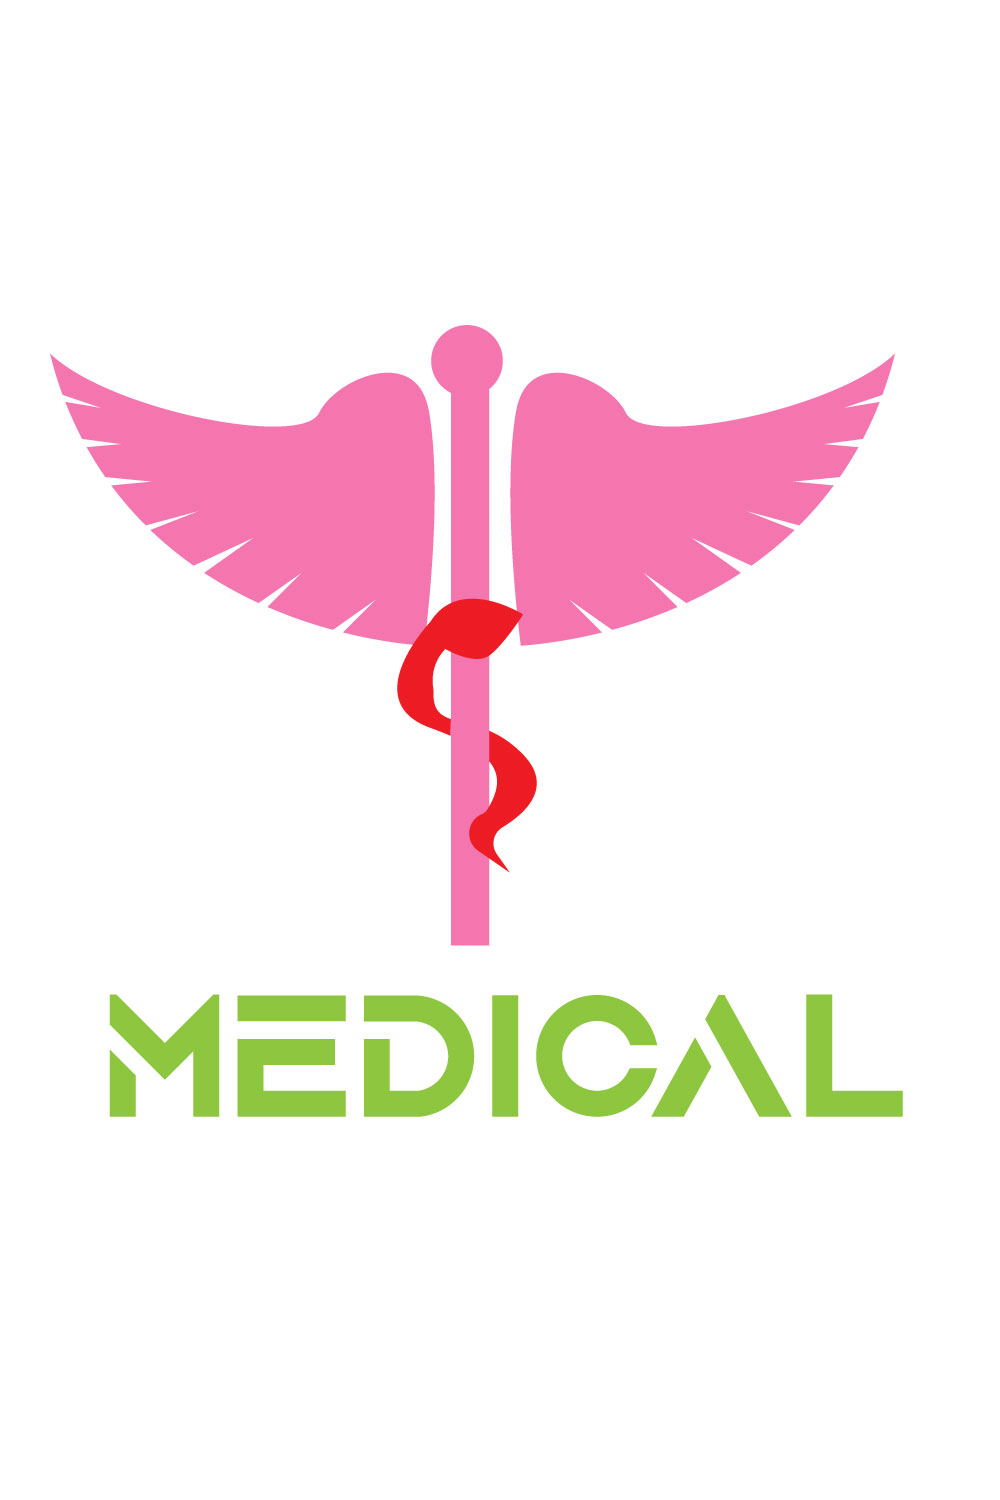 Medical logo or Doctor Logo pinterest preview image.